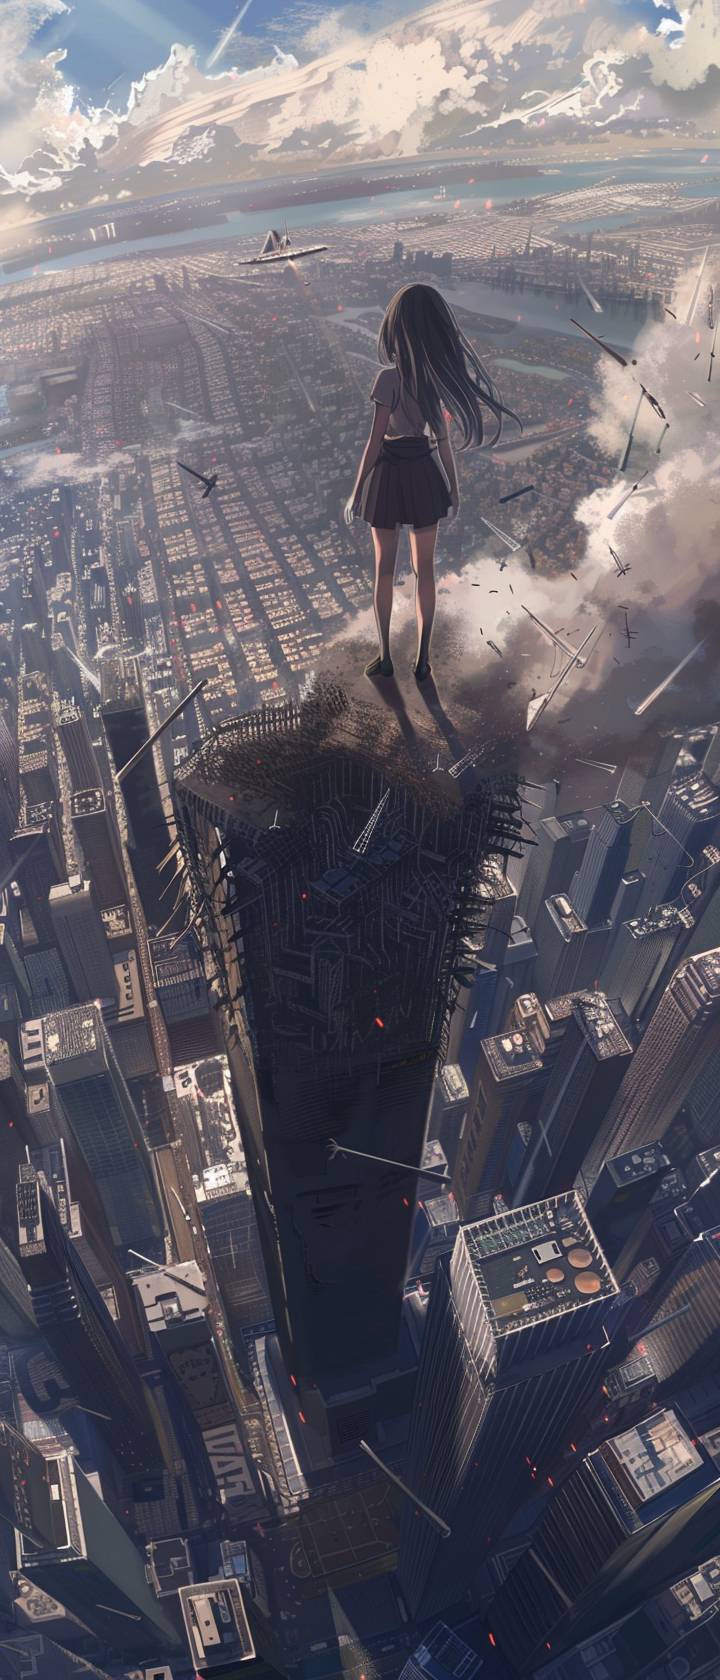 アニメの少女が、飛行機の衝突を受けた後に世界貿易センター北塔の上に立ち、倒れる様子を見つめています。